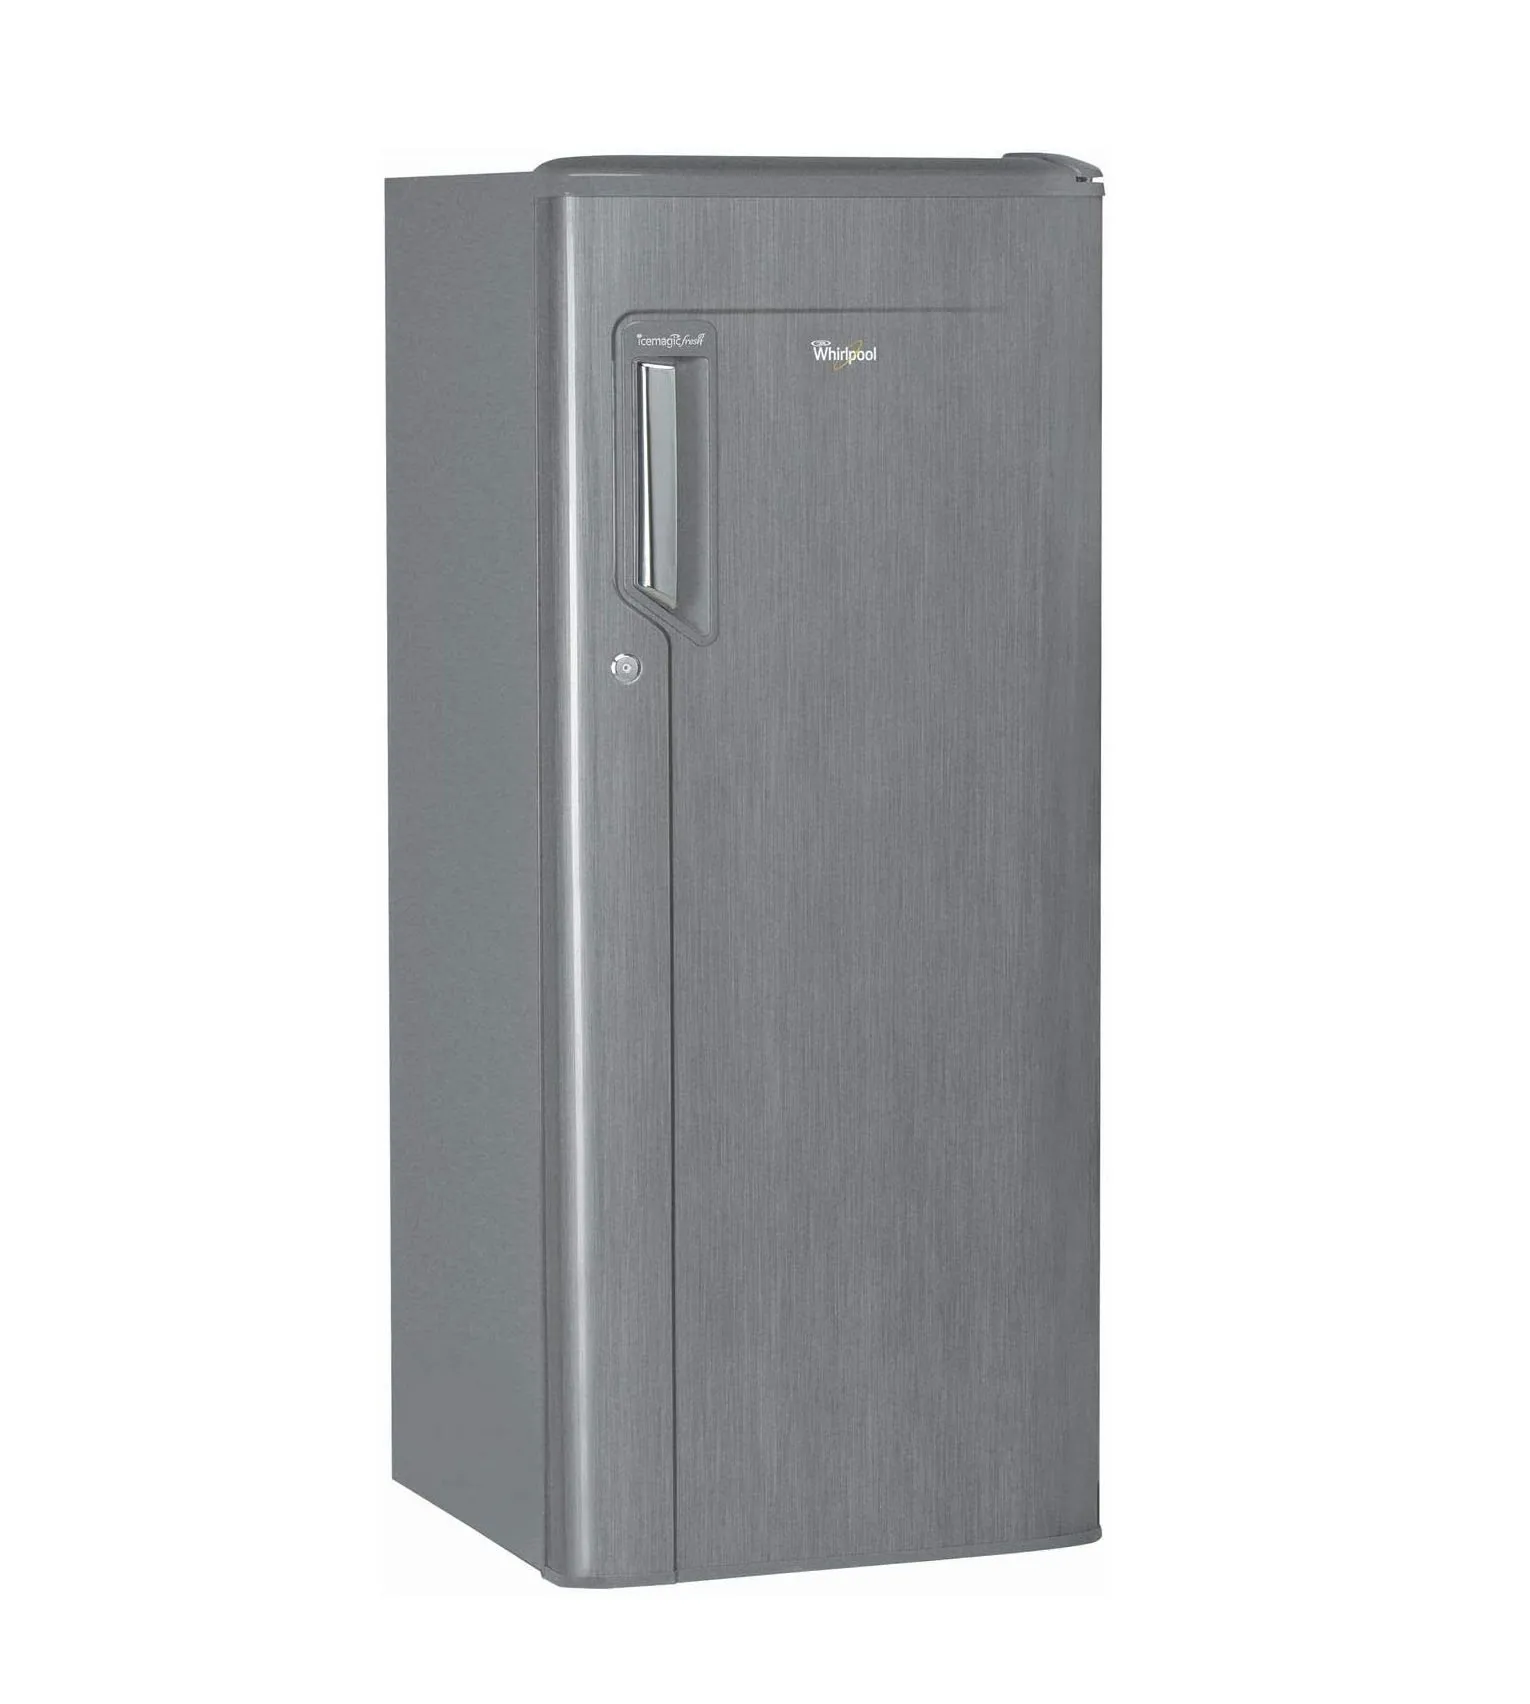 Whirlpool 190 Liters Single Door Refrigerator, Grey Wmd205